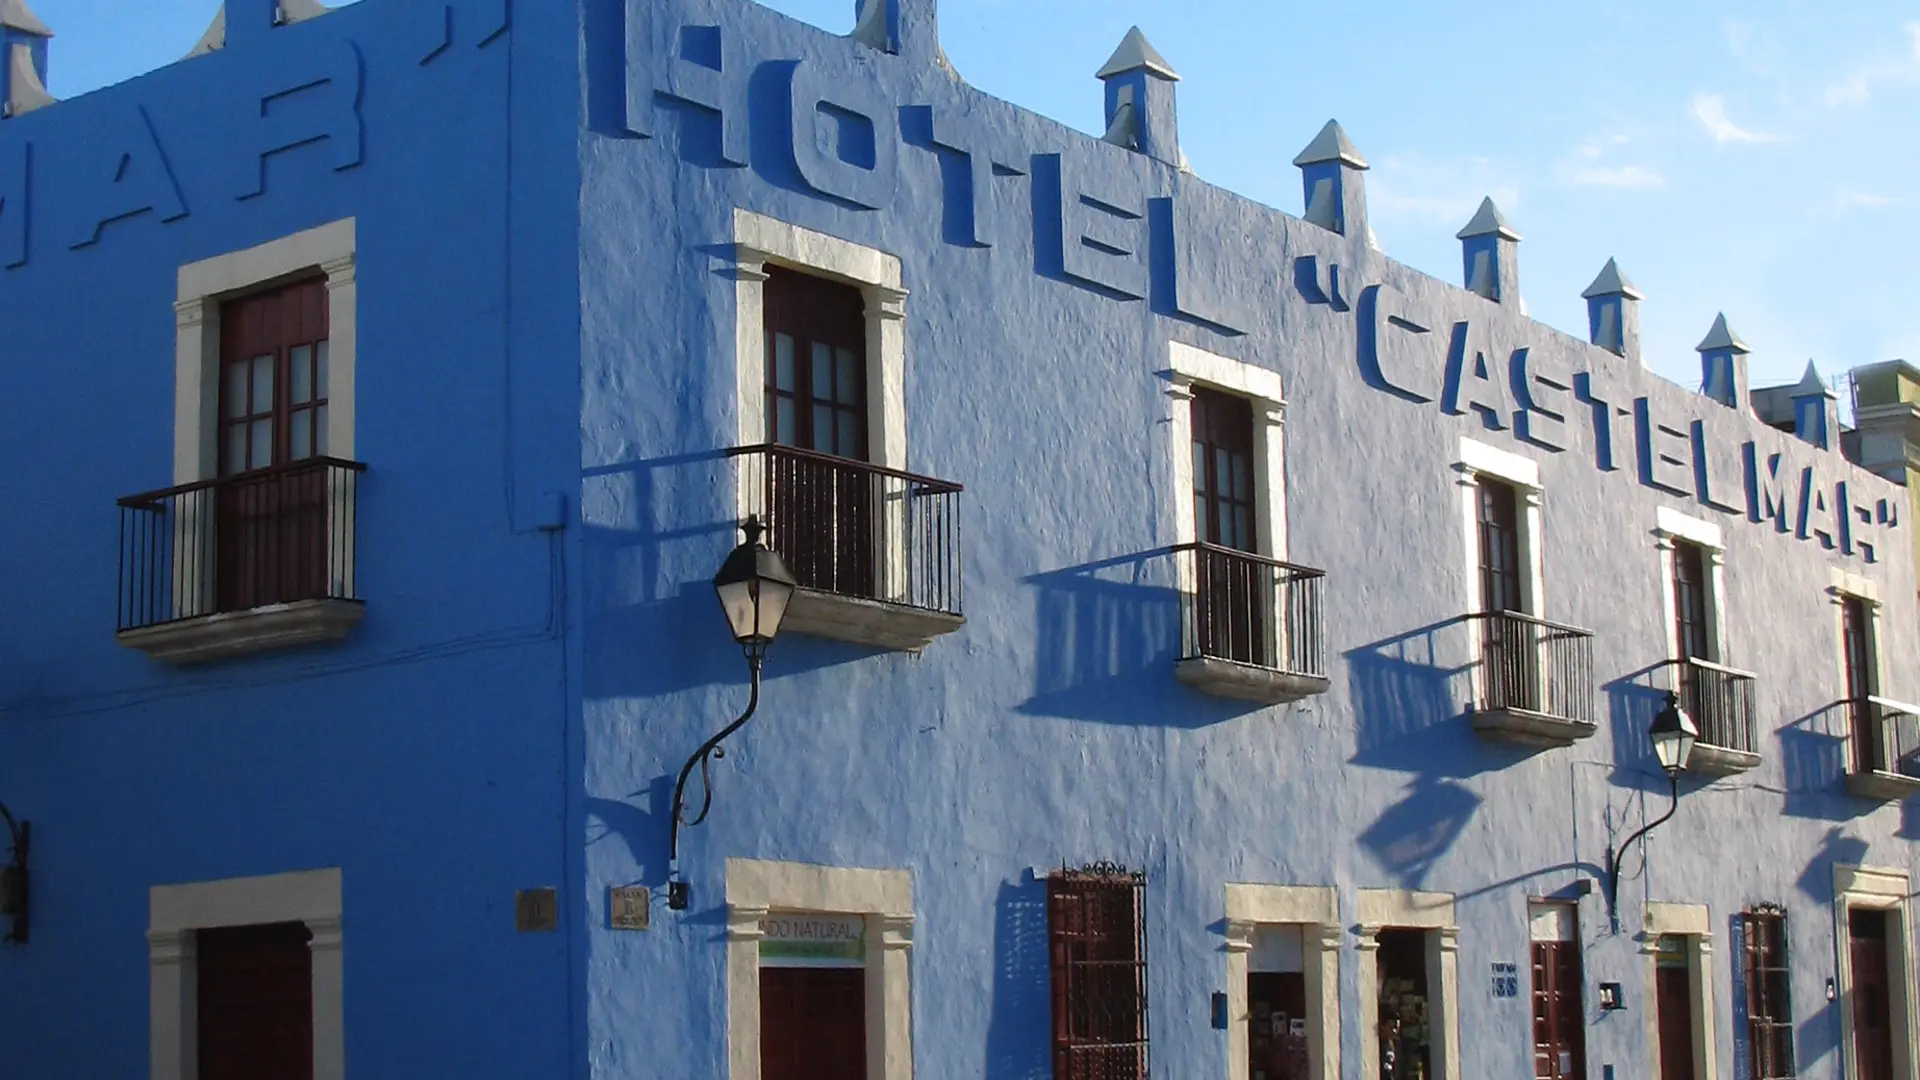 Hotel Castelmar 07.jpg